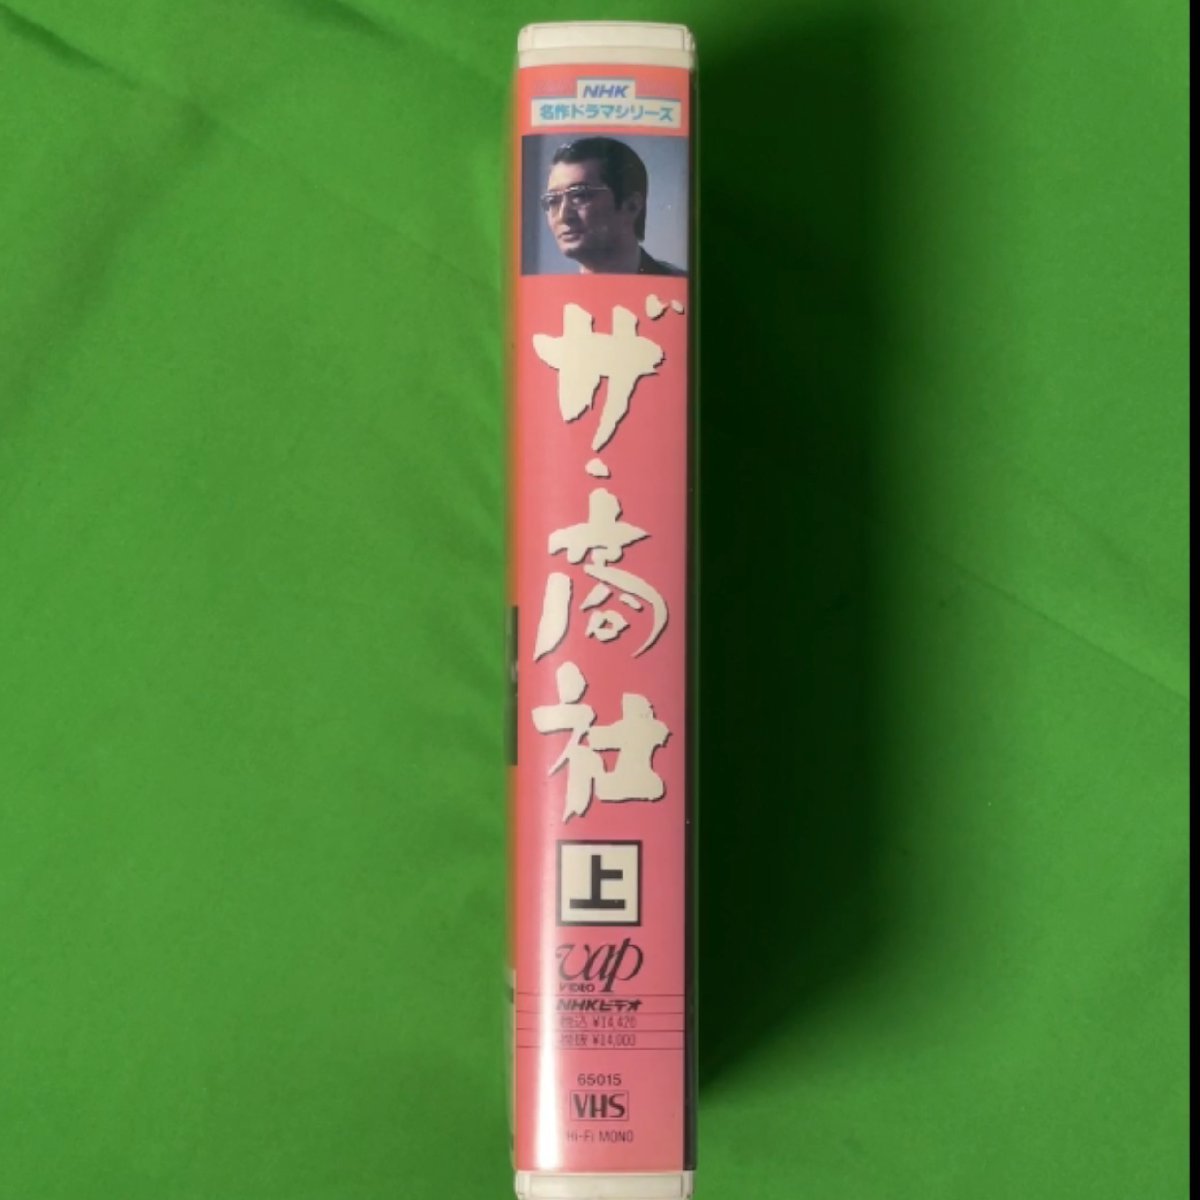 VHS ザ商社 上巻 NHK名作ドラマシリーズ NHKビデオ 愛する時と死する時 江坂ファミリー 65015_画像3